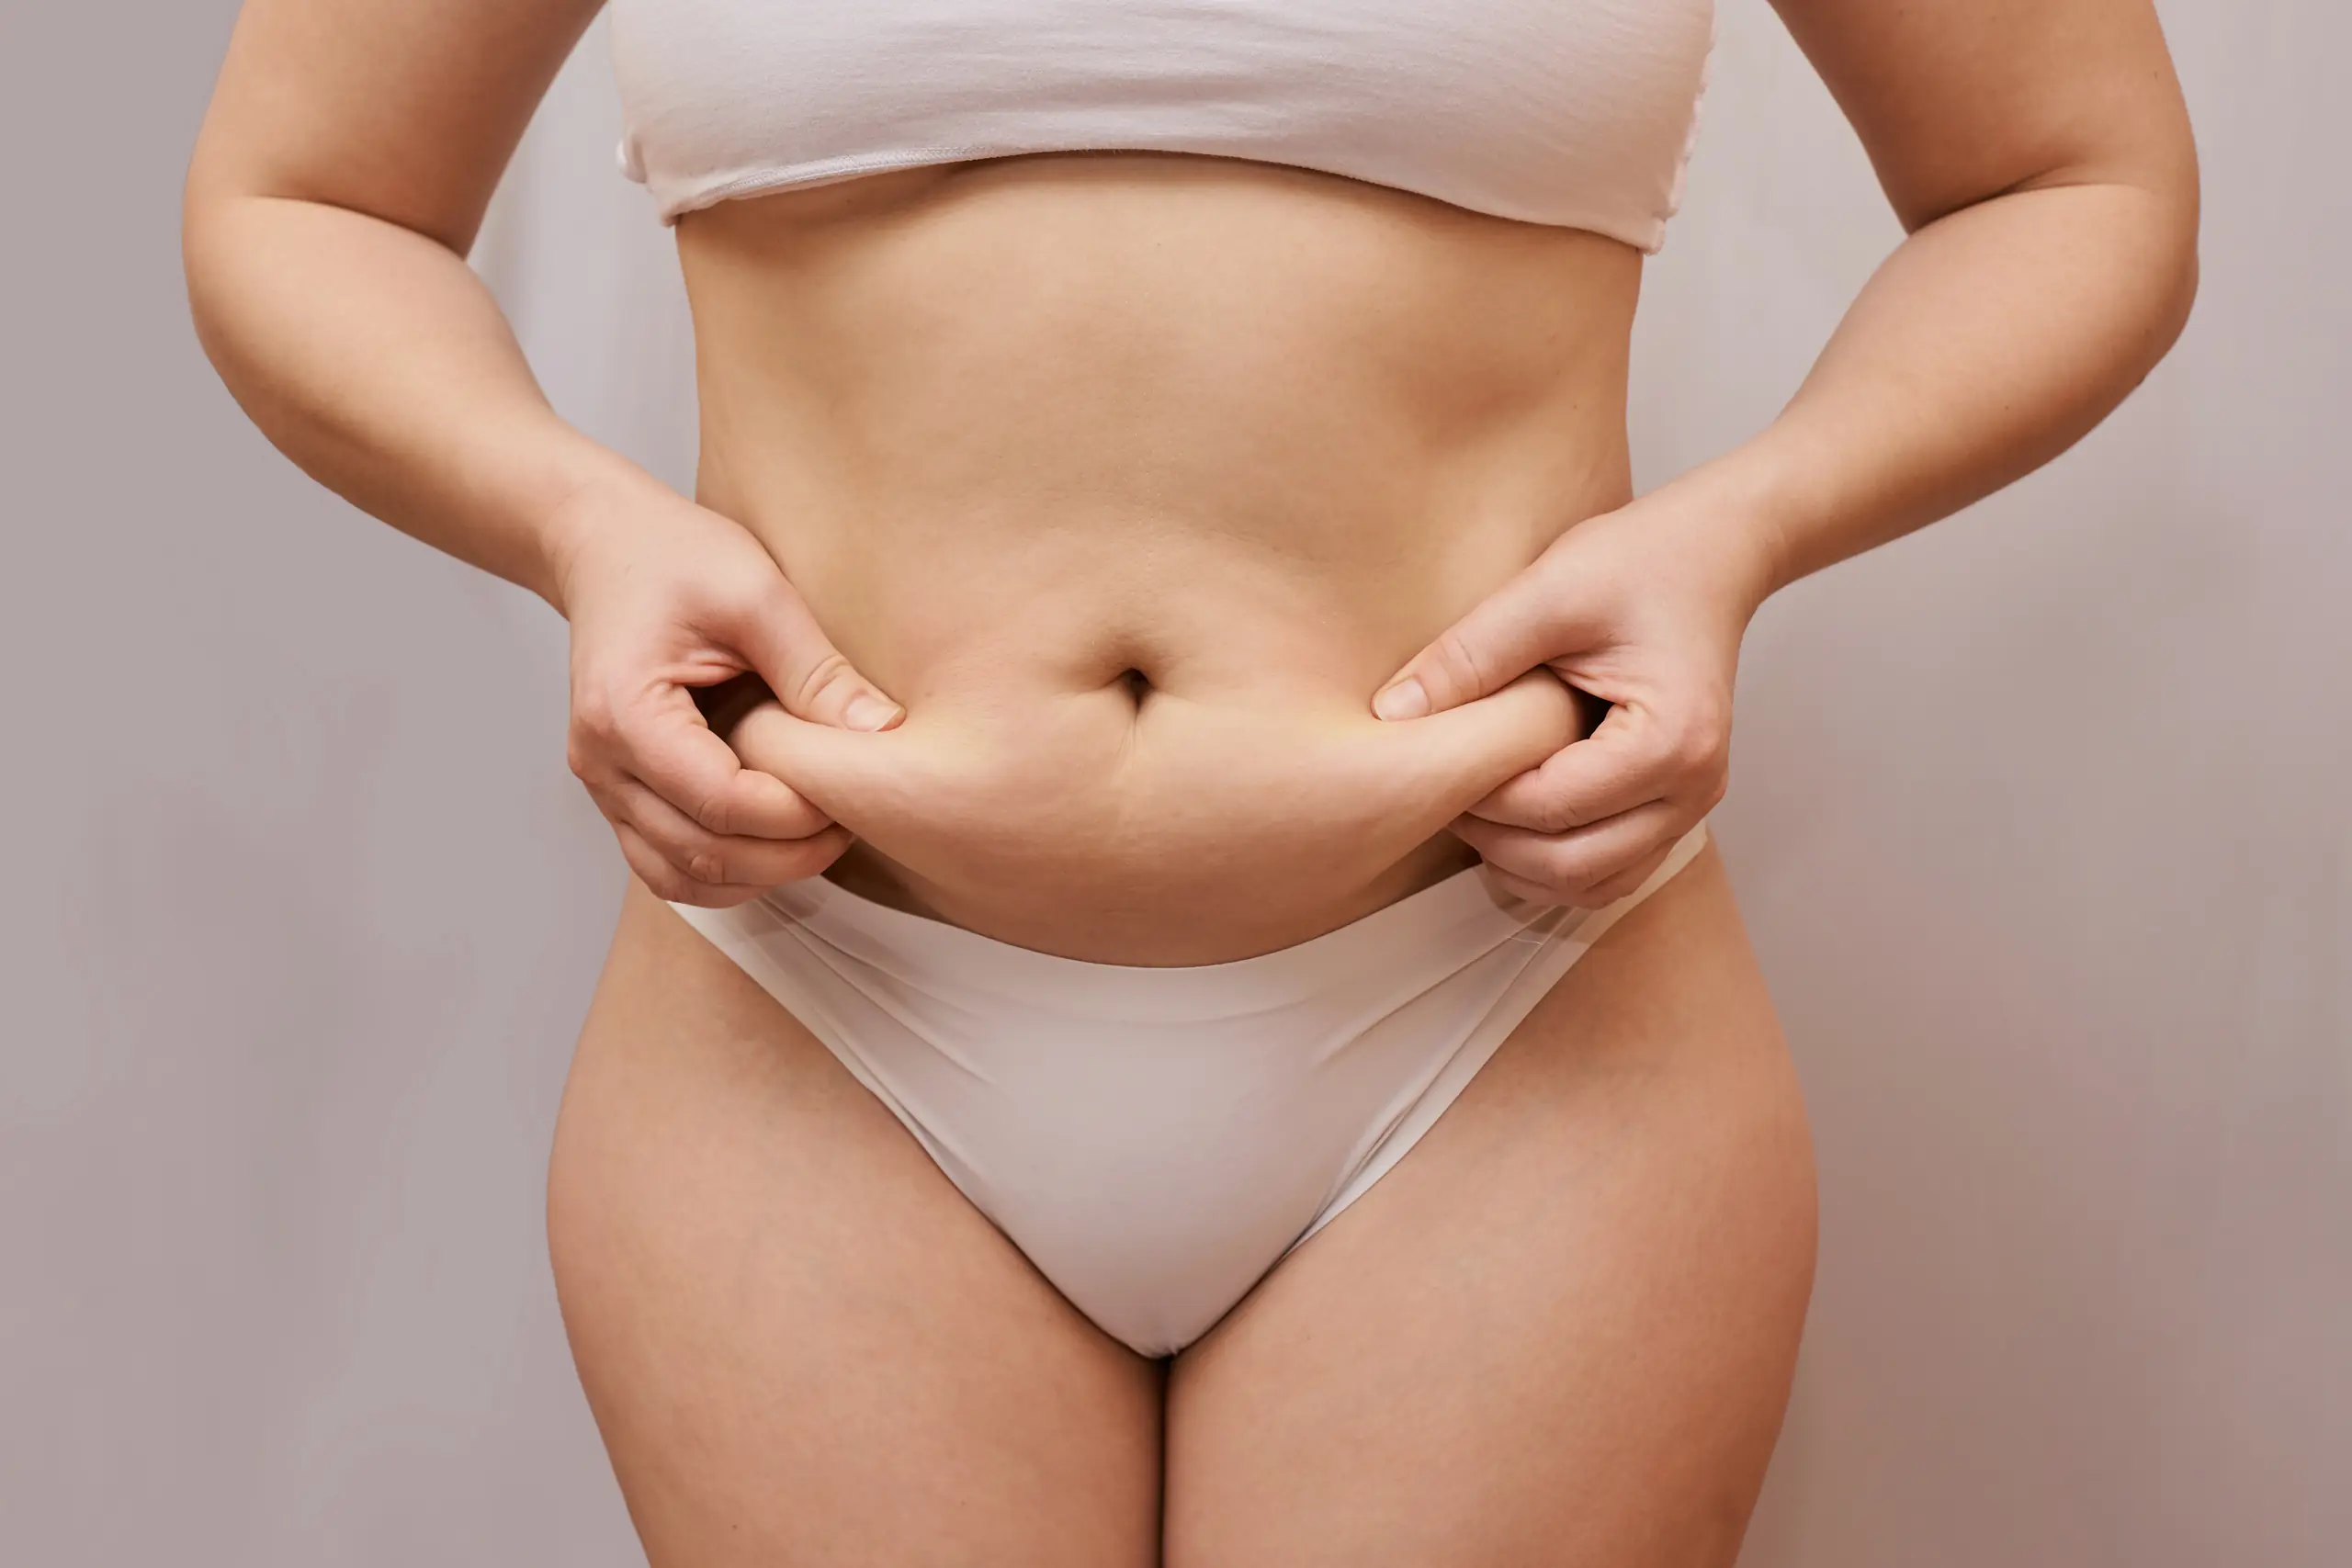 Image montrant une silhouette féminine avec des plis et des irrégularités sur la zone du ventre, illustrant les effets de la cellulite et comment l'éliminer.